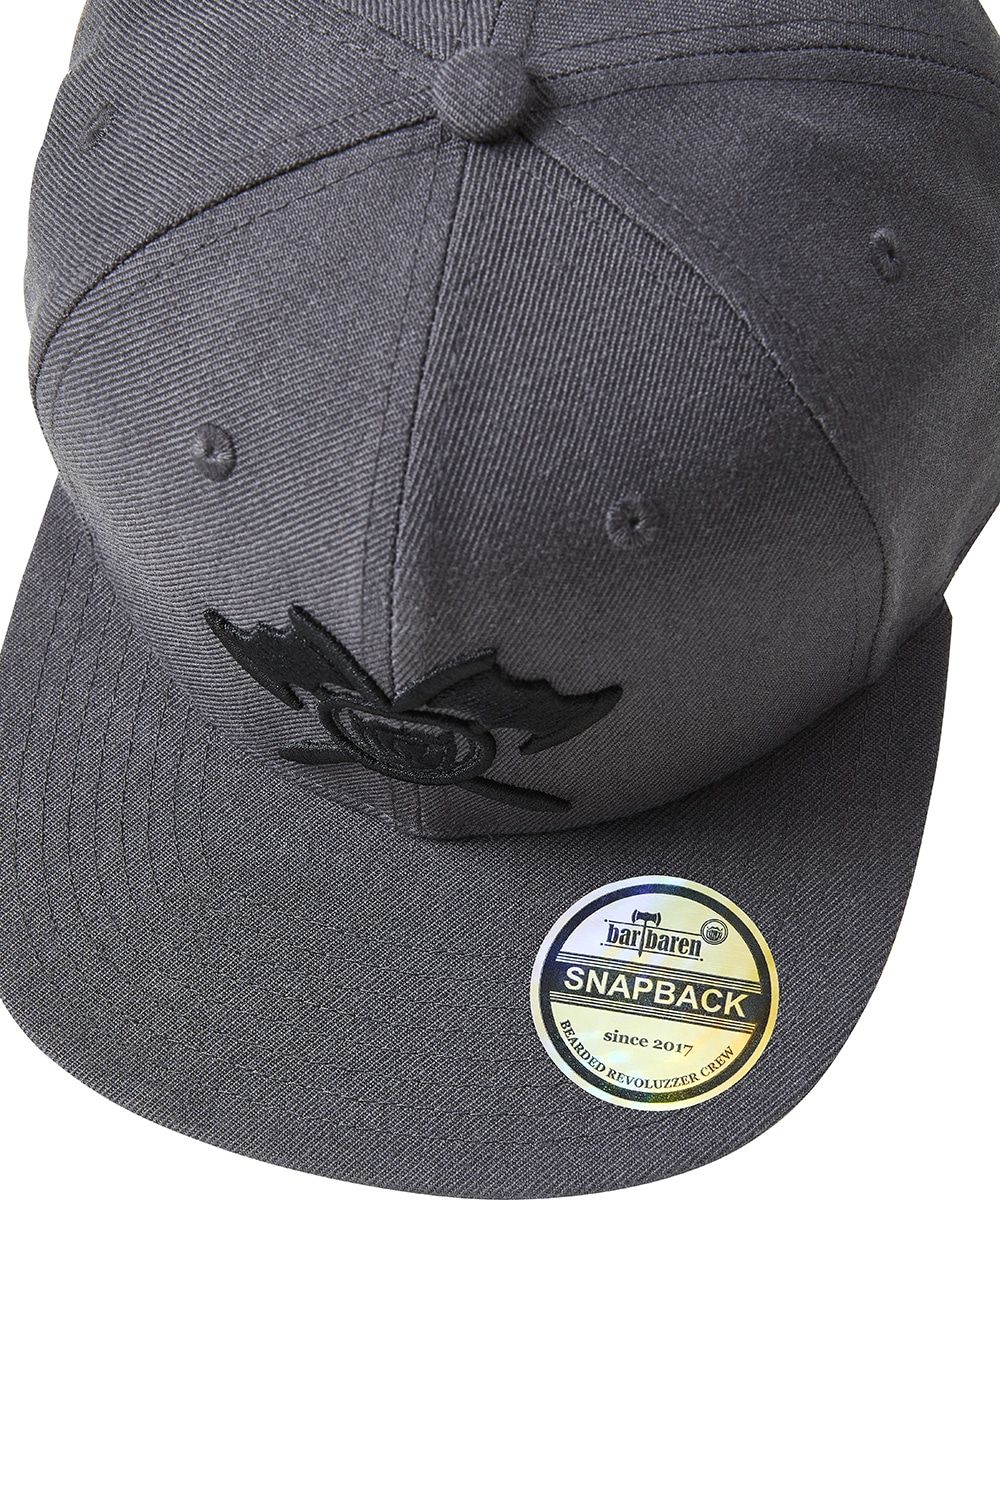 Snapback Cap grau, unisex, 3D Axt Logo Stick